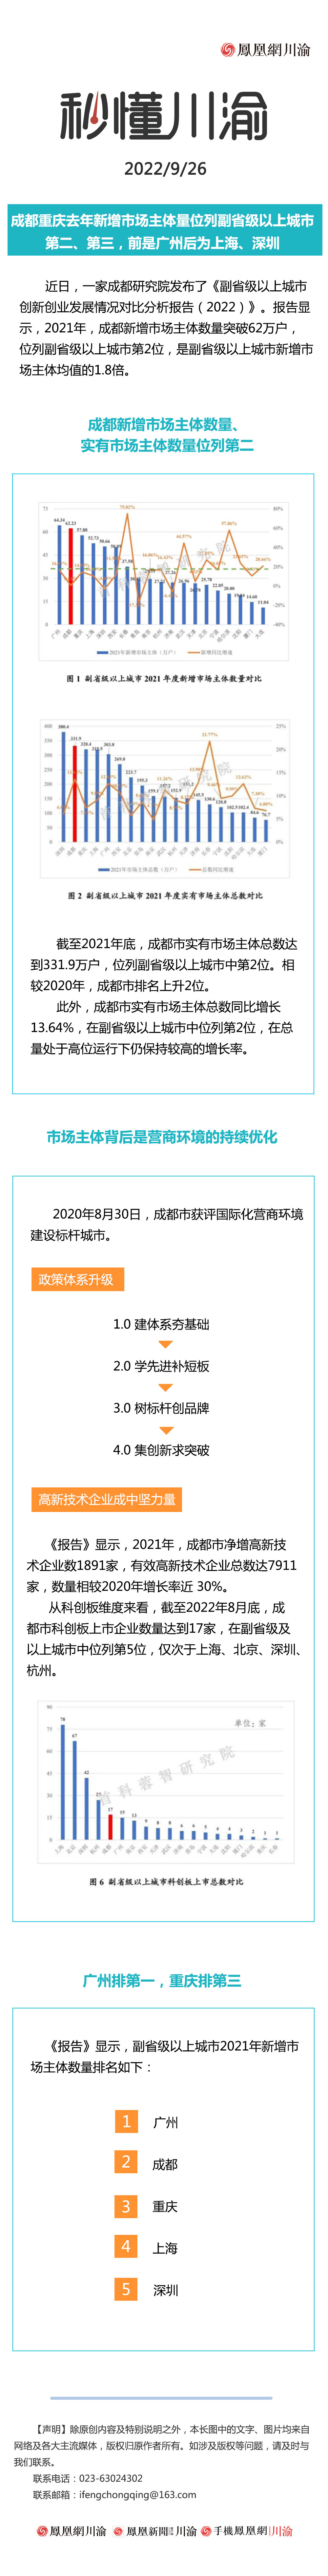 秒懂川渝 | 成都重庆去年新增市场主体量位列副省级以上城市第二、第三，前是广州后为上海、深圳